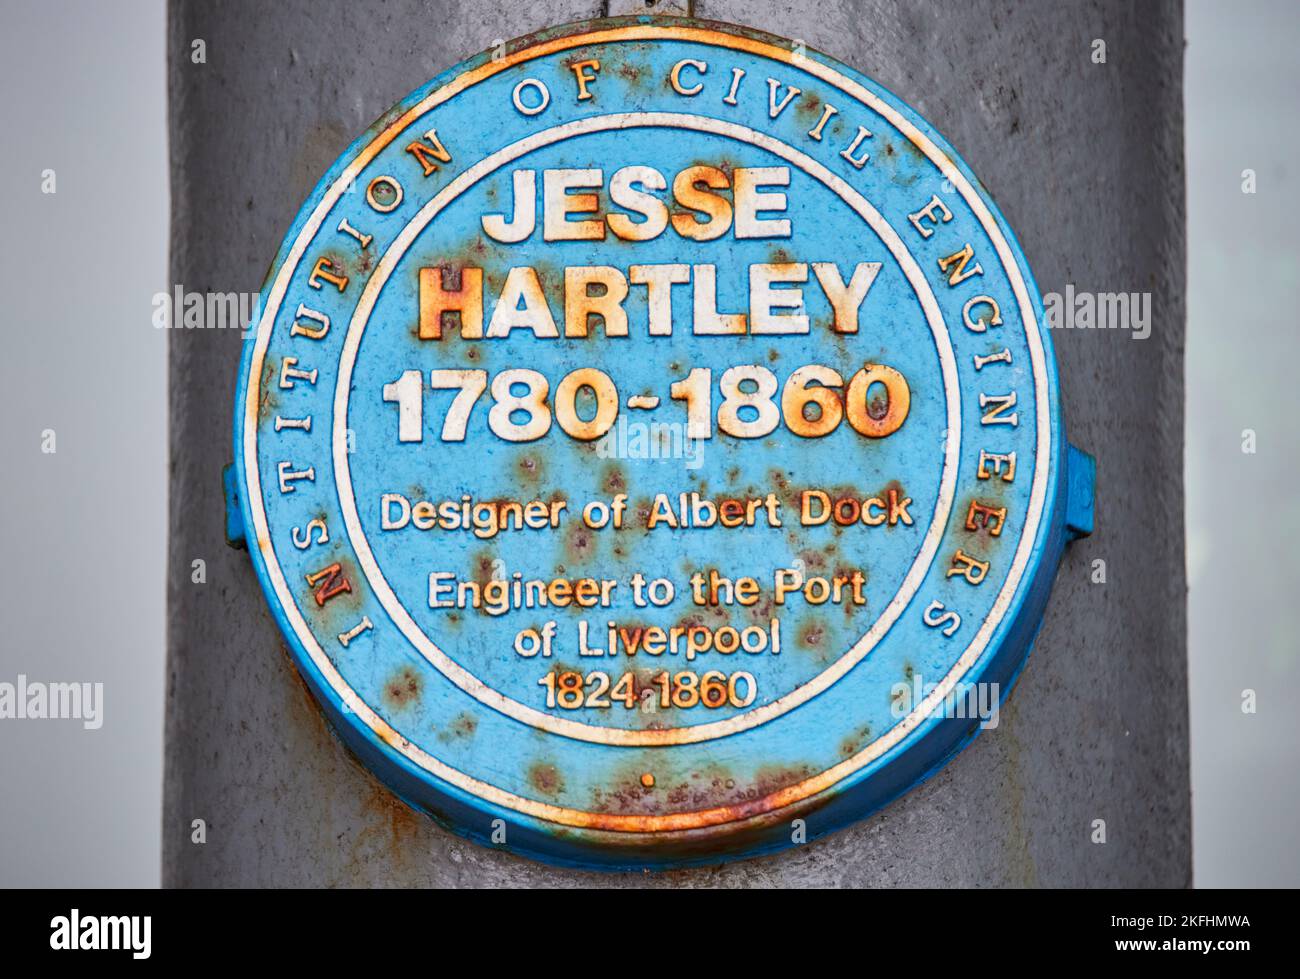 Jesse Hartley Ingénieur civil et Surintendant des préoccupations de la propriété Dock à Liverpool, plaque bleue Banque D'Images